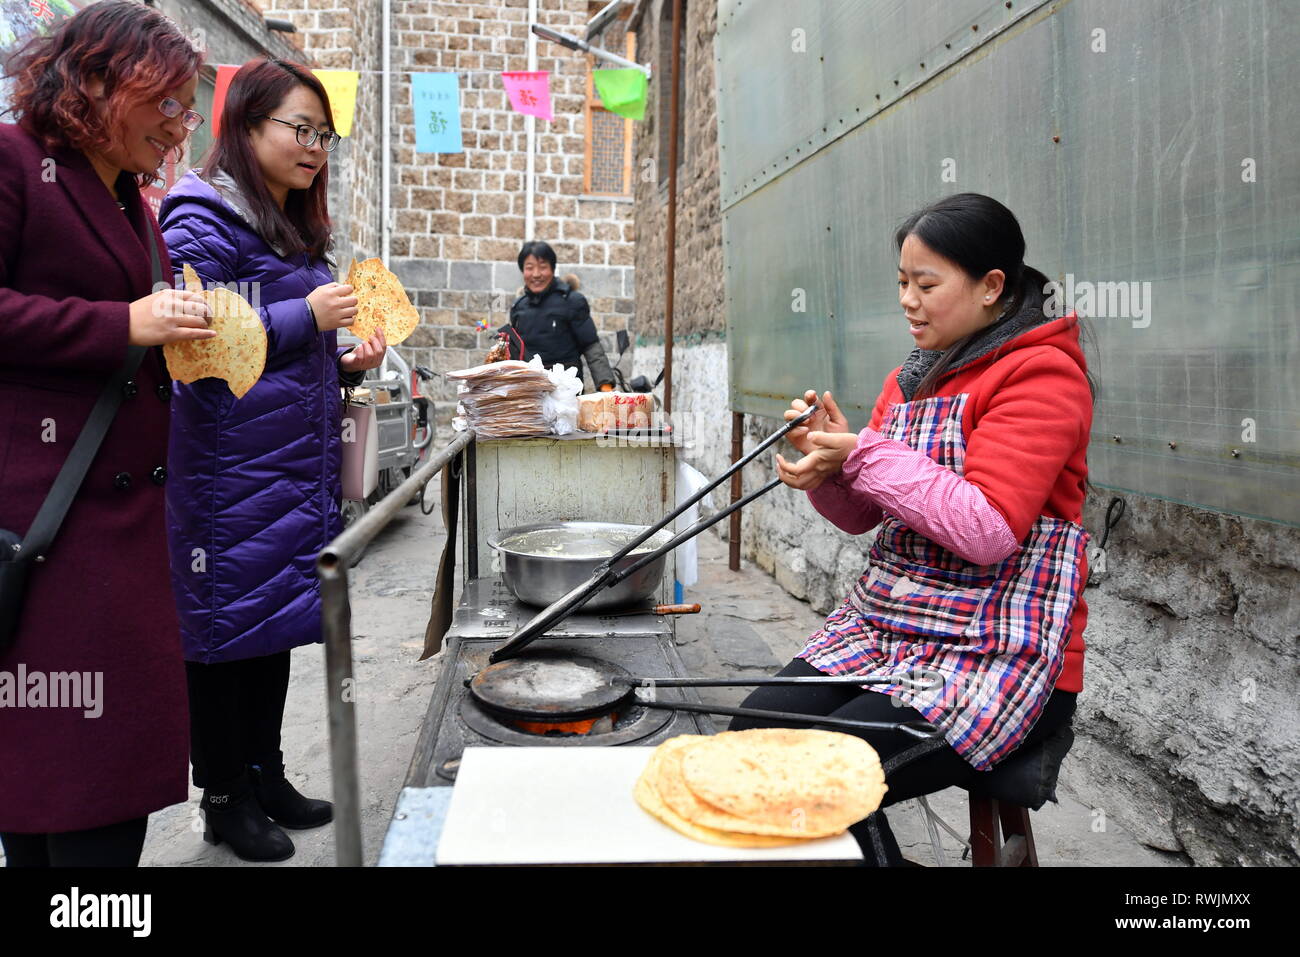 (190307) -- PINGDING, 7 marzo 2019 (Xinhua) -- abitante Wang Yongzhen rende cibi tradizionali nel villaggio di Niangziguan, Niangziguan Town, Pingding County, a nord della Cina di nella provincia di Shanxi, nel febbraio 26, 2019. Le donne di Niangziguan città hanno giocato un ruolo fondamentale nello sviluppo del turismo locale industria sotto un alleviamento della povertà campagna. Facendo esperienza turistica in considerazione, essi hanno realizzato piani approfondita al fine di migliorare il servizio chiave fattori quali percorsi, di ristorazione e di alloggio. A sua volta, il numero di turisti sono aumentati. Tutti i residenti nella città di Niangziguan sono stati aiutati dalla povertà mediante Foto Stock